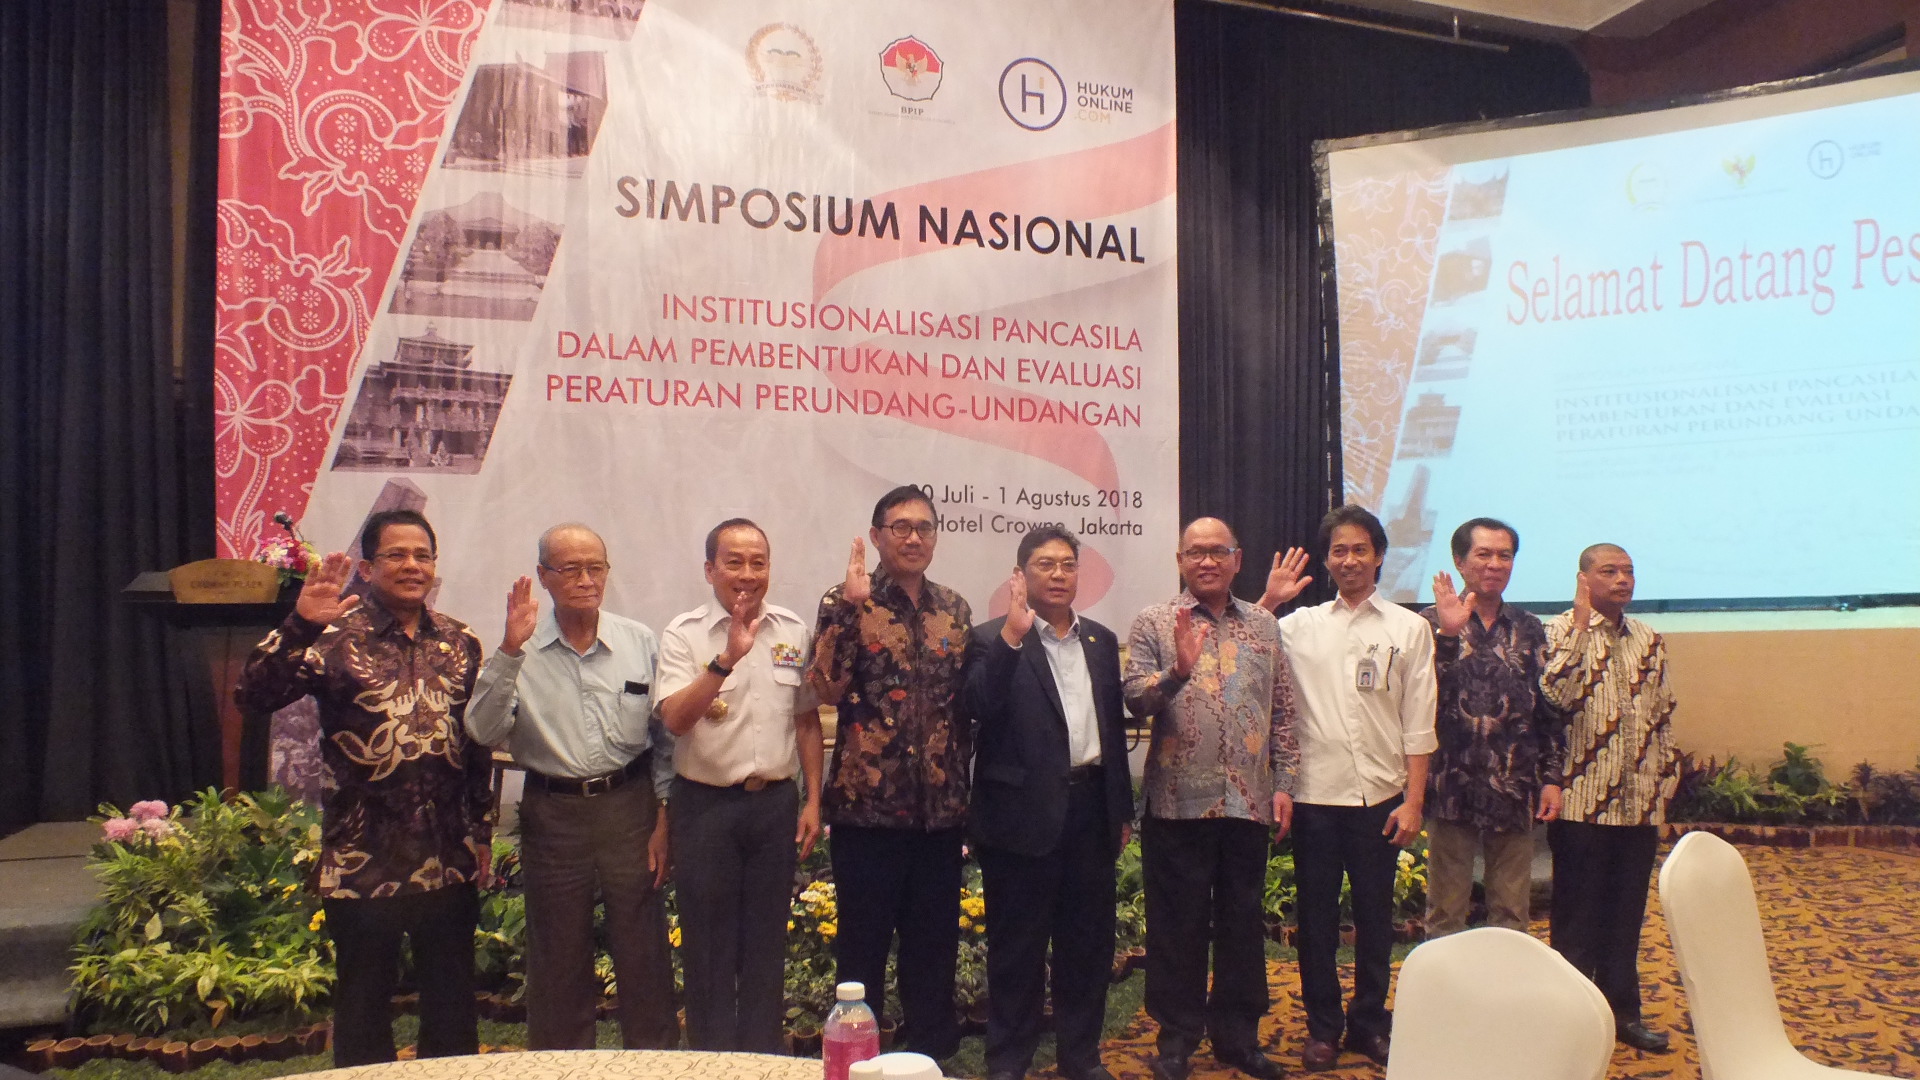 Pembukaan Simposium Nasional Pancasila: Institusionalisasi Pancasila dalam Pembentukan dan Evaluasi Peraturan Perundang-Undangan, Jakarta, 30 Juli 2018